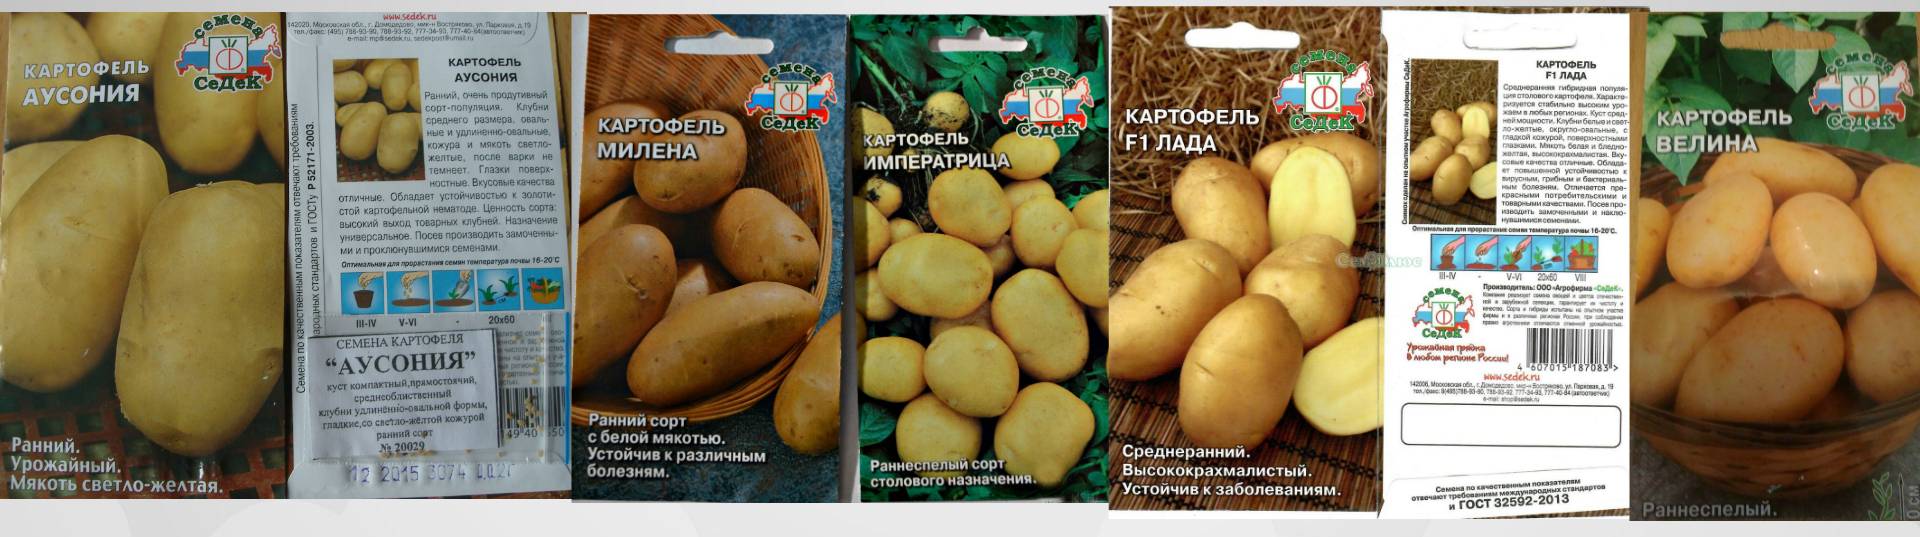 Почему не прорастают семена картофеля, как предупредить